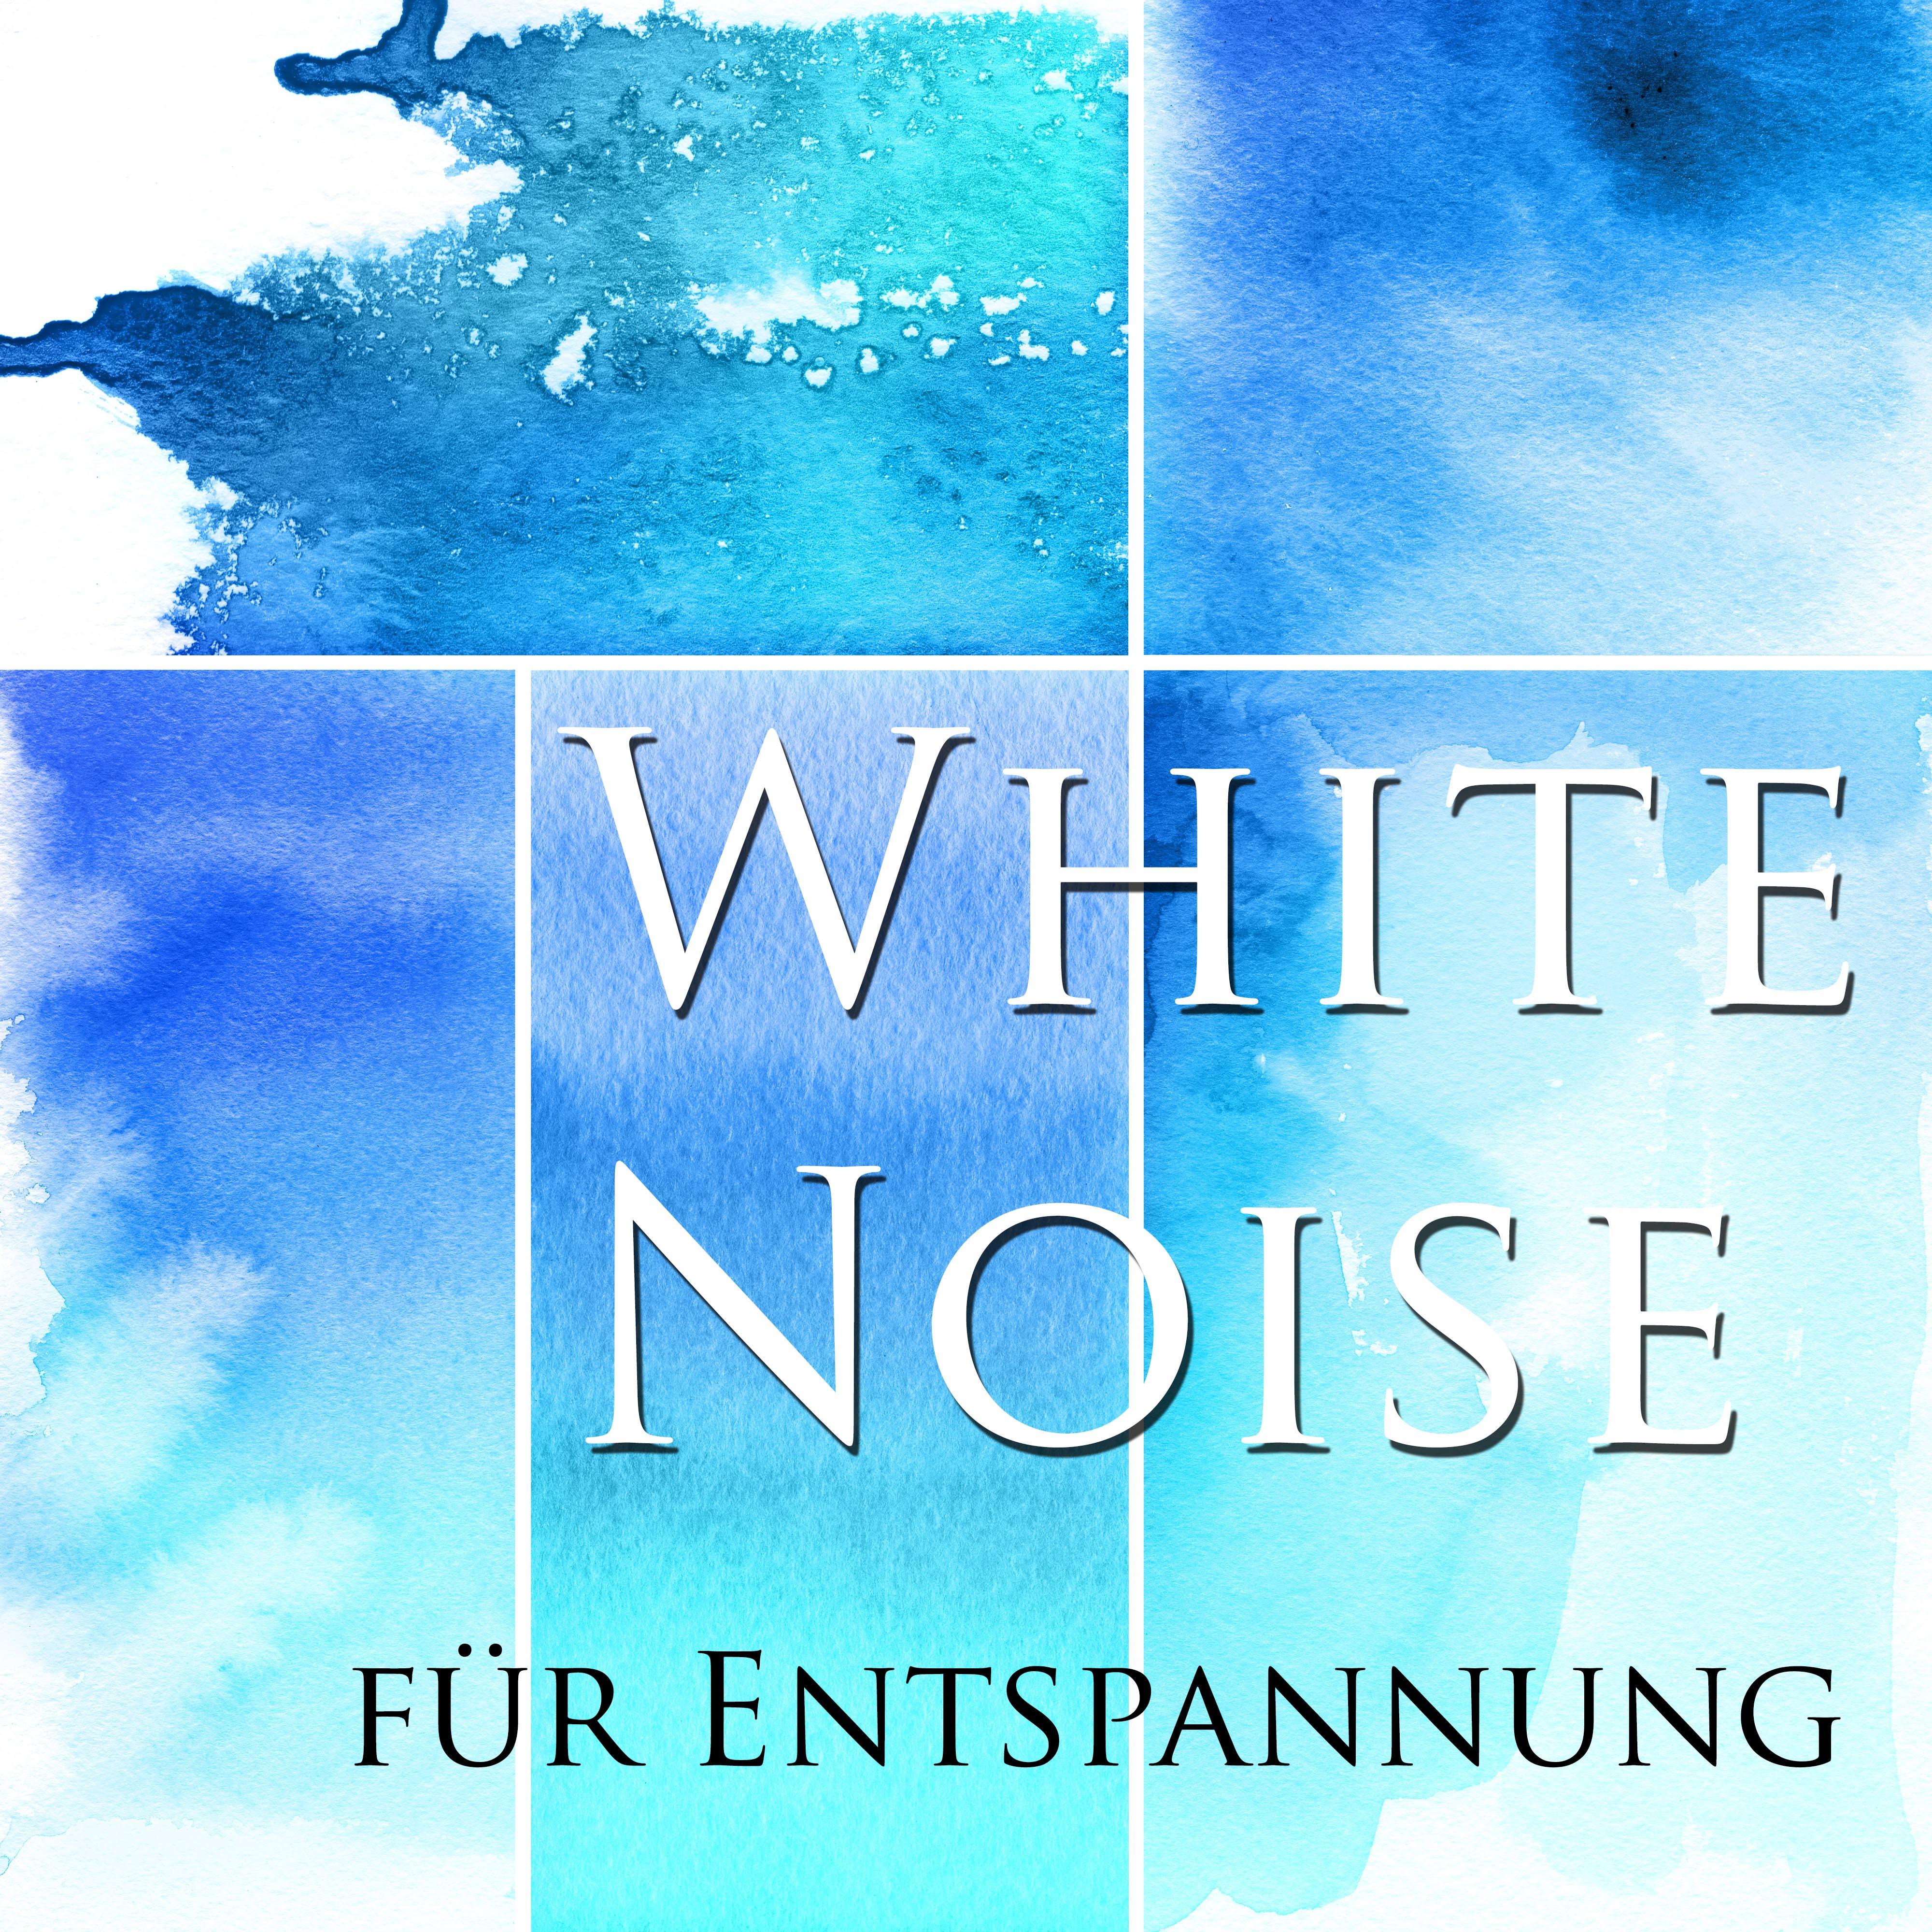 White Noise fü r Entspannung  Instrumentalmusik und entspannende Kl nge der Natur Stress und Spannungen zu lindern